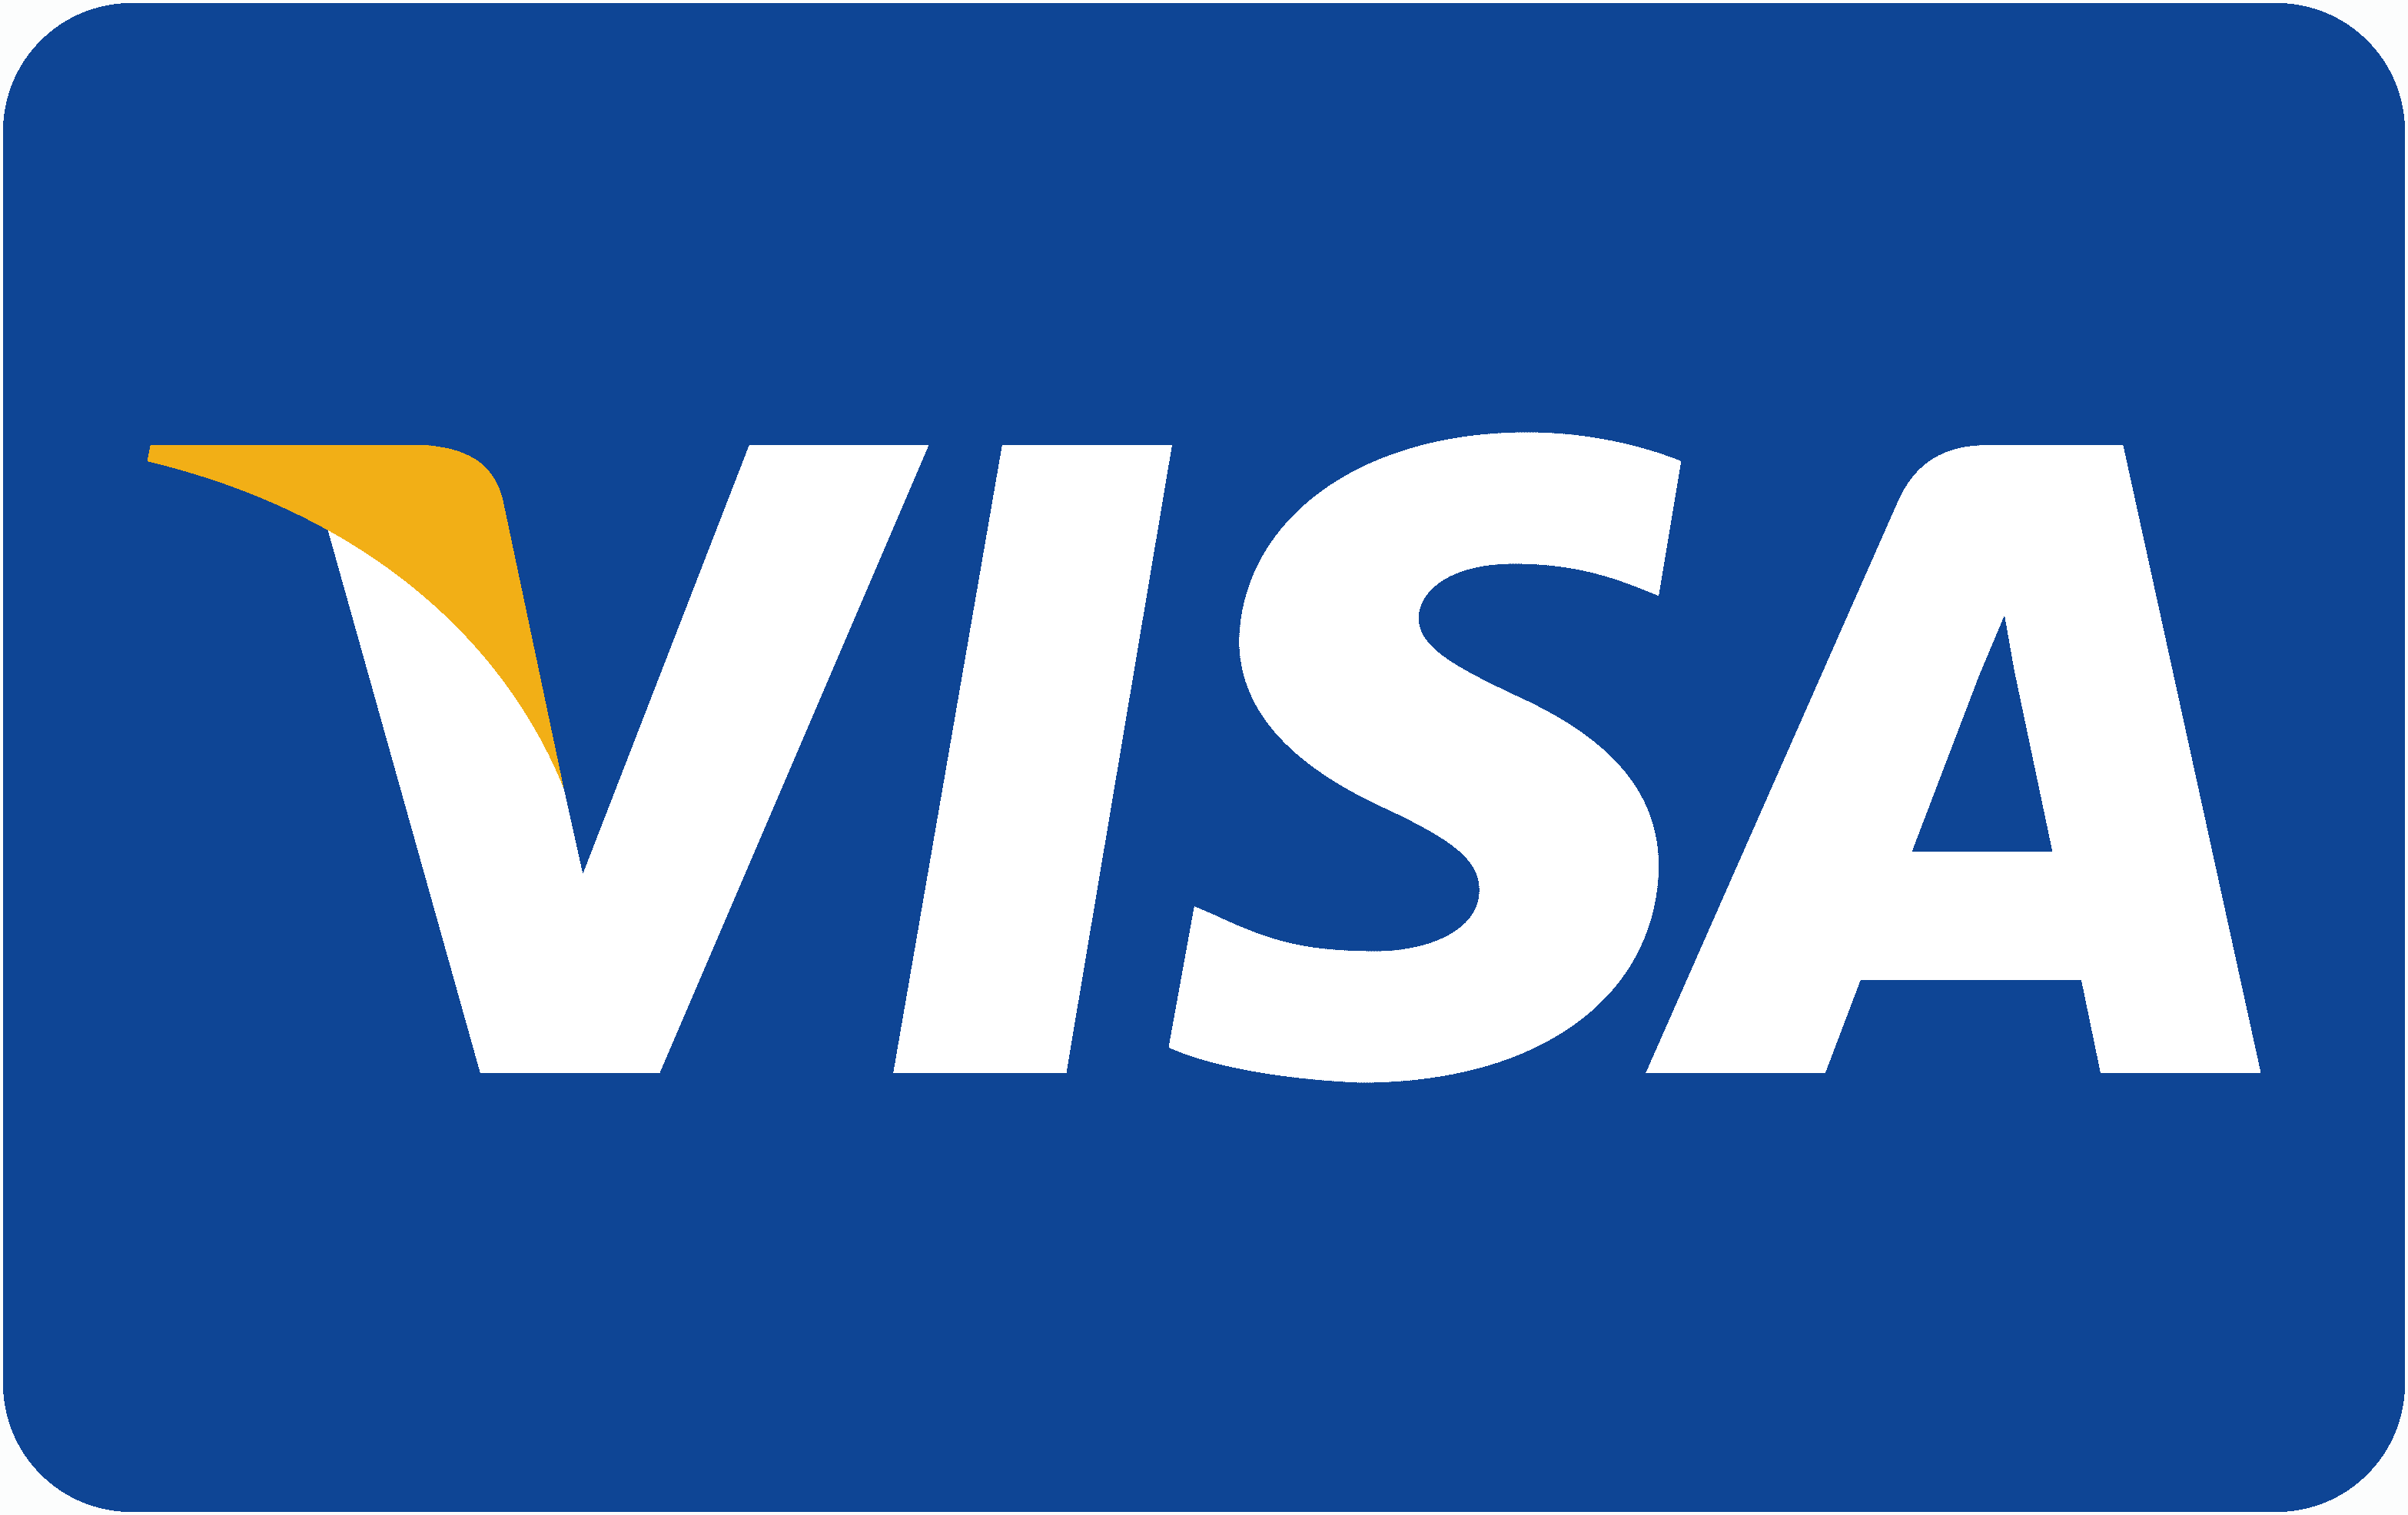 Visa login. Значок visa. Логотип виза. Visa Signature логотип. Логотип платежной системы visa International.